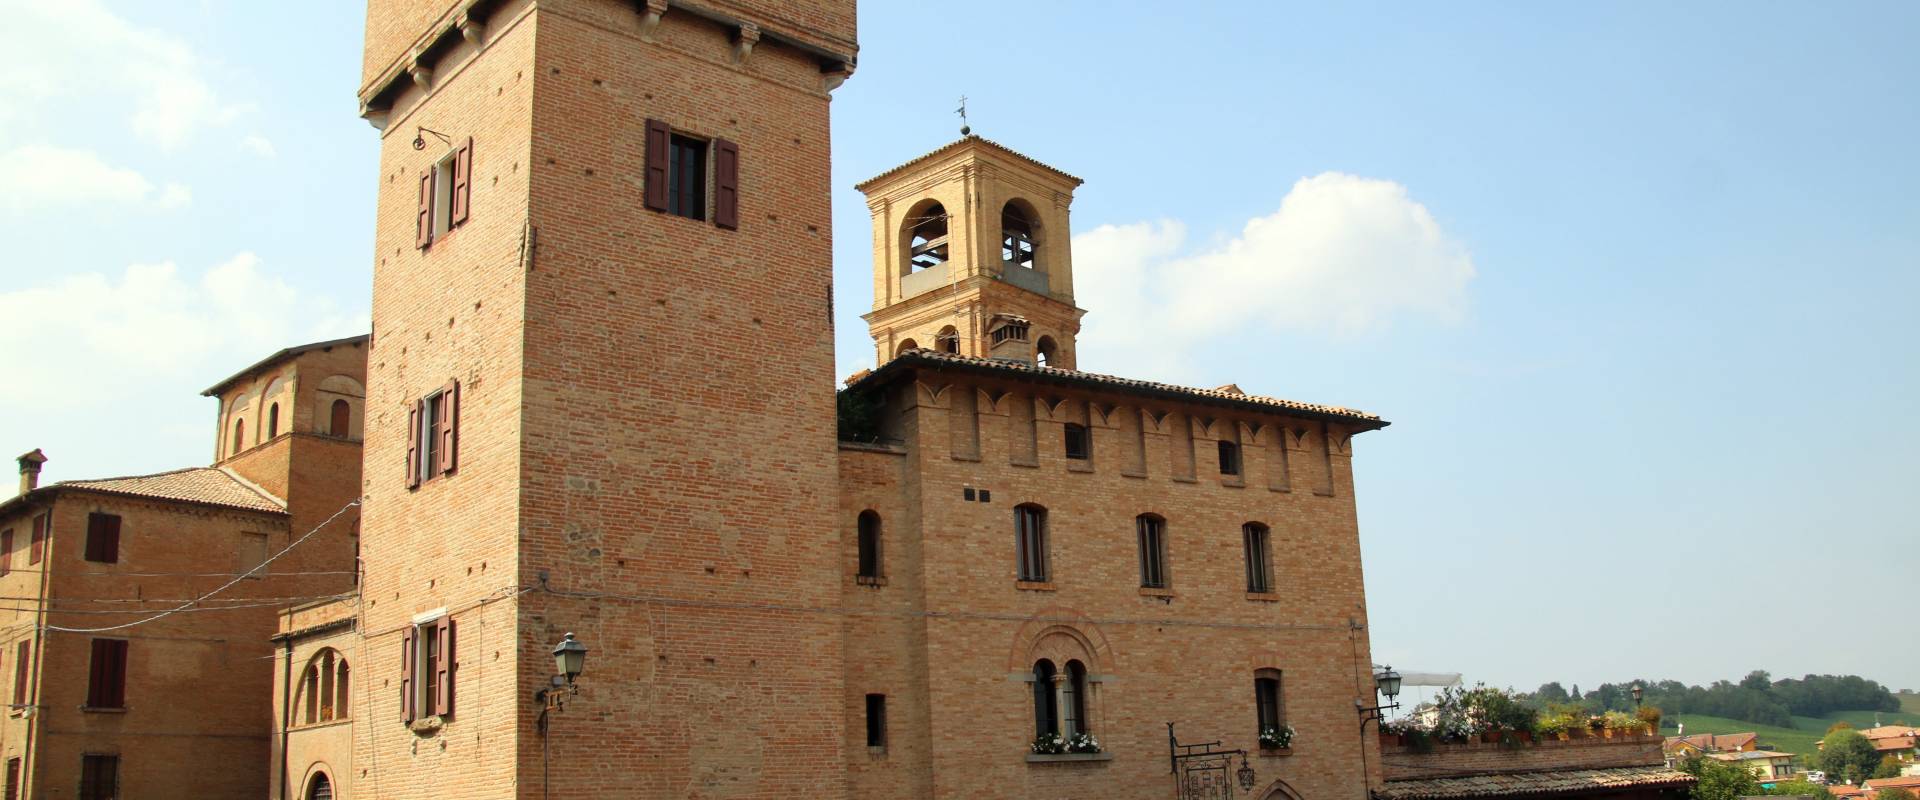 Torre delle Prigioni (Castelvetro di Modena) 07 foto di Mongolo1984